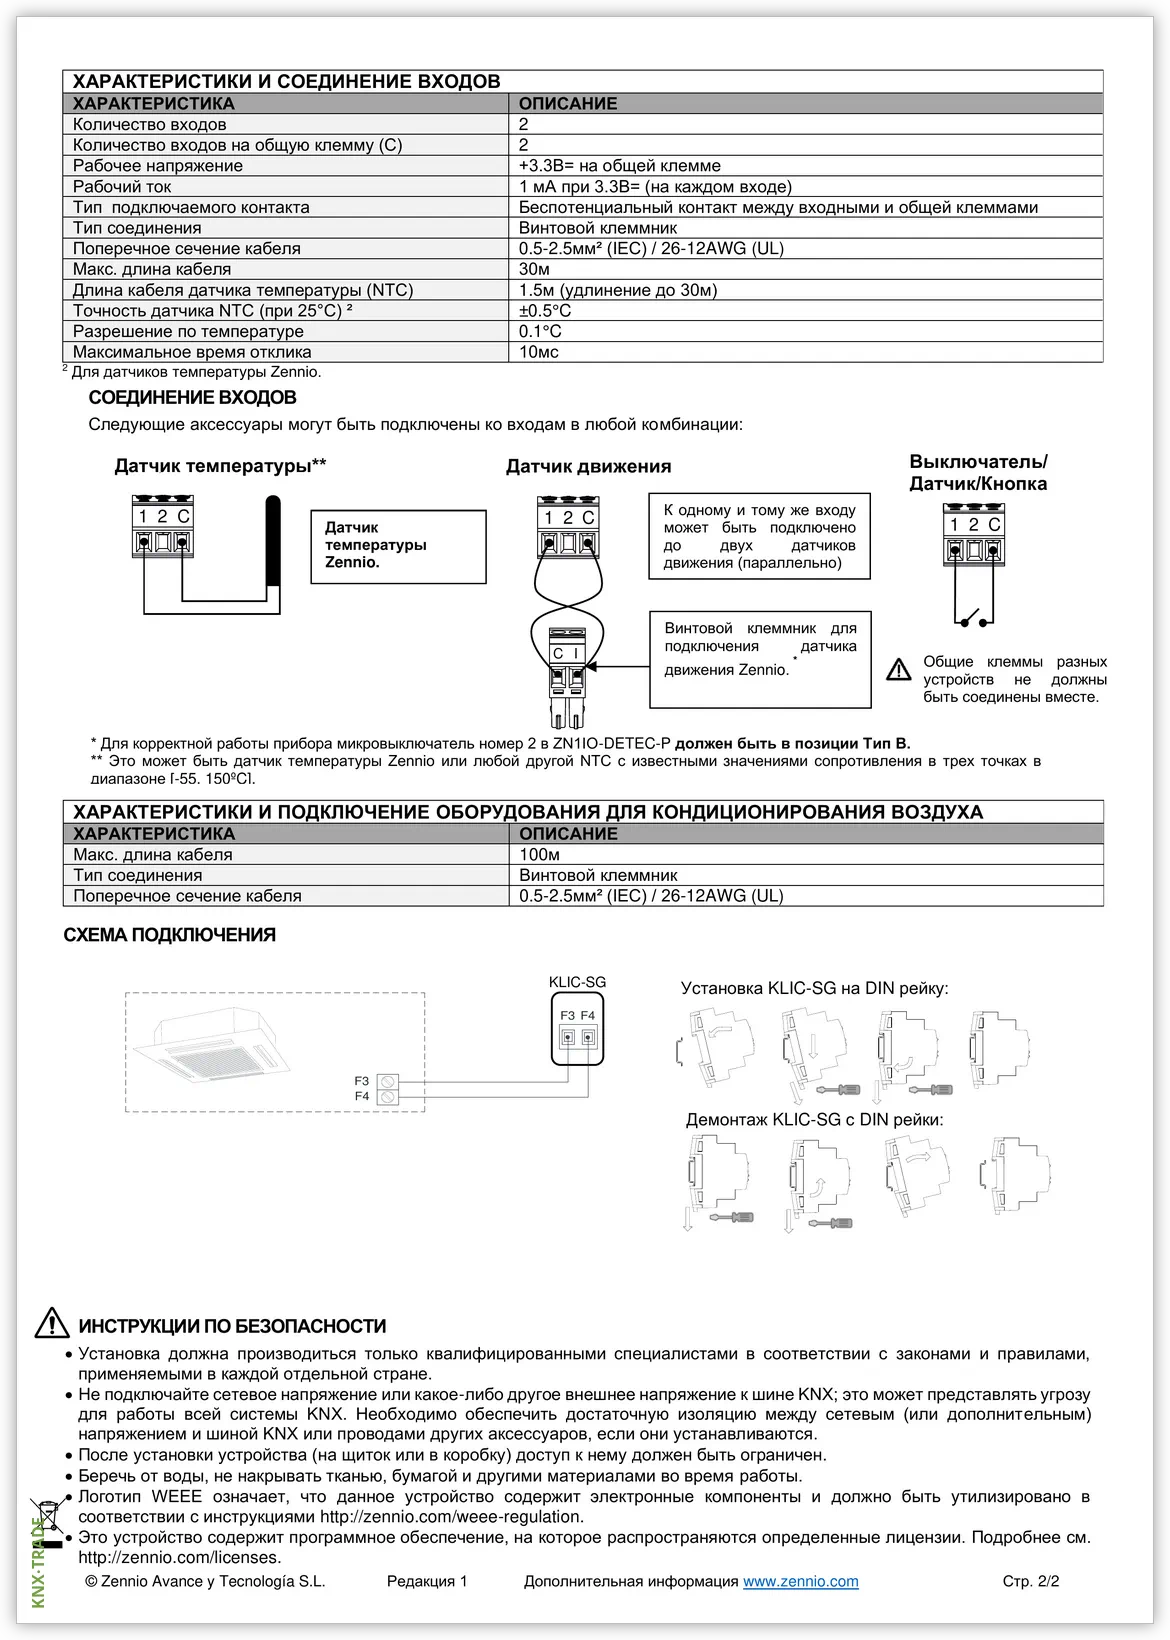 Datasheet (2) Zennio [ZCLSG] KLIC-SG / Шлюз KNX-Samsung VRF